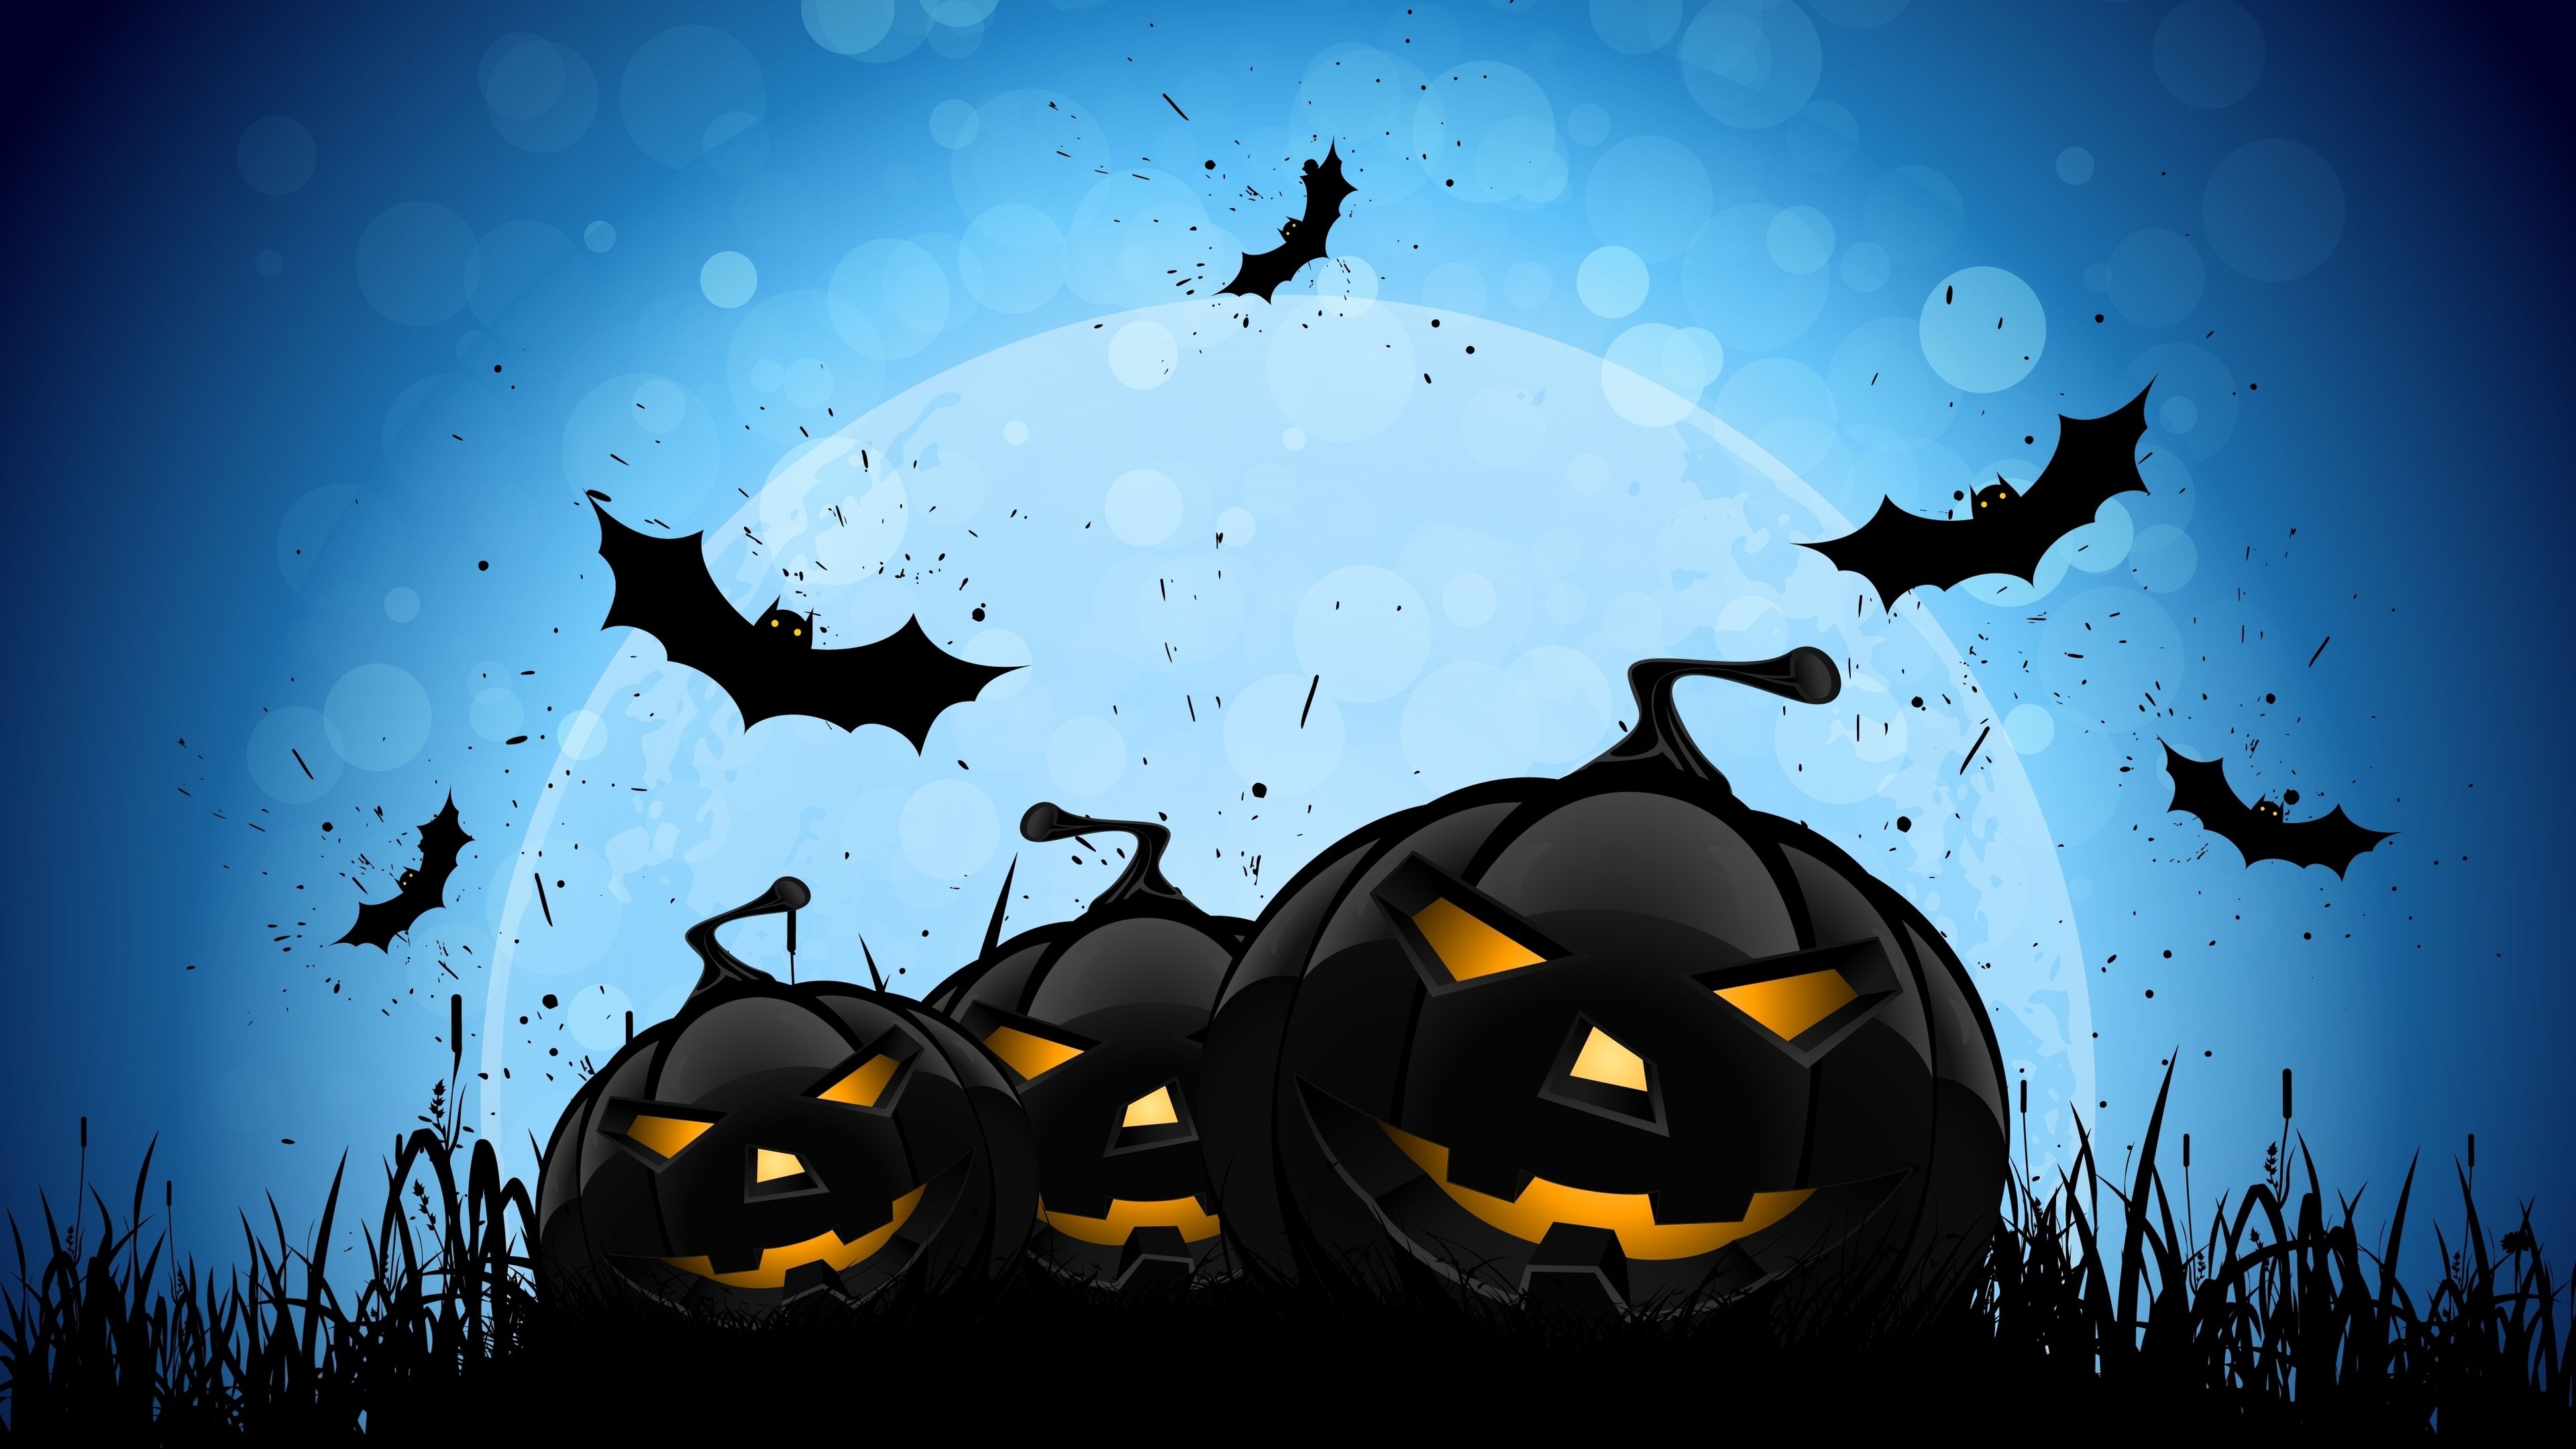 Halloween Bat 4k Pumpkin Wallpaper, Holidays Wallpaper, Hd Wallpaper, Halloween Wallpaper, Celebration. Halloween Canvas, Halloween Image, Halloween Backdrop